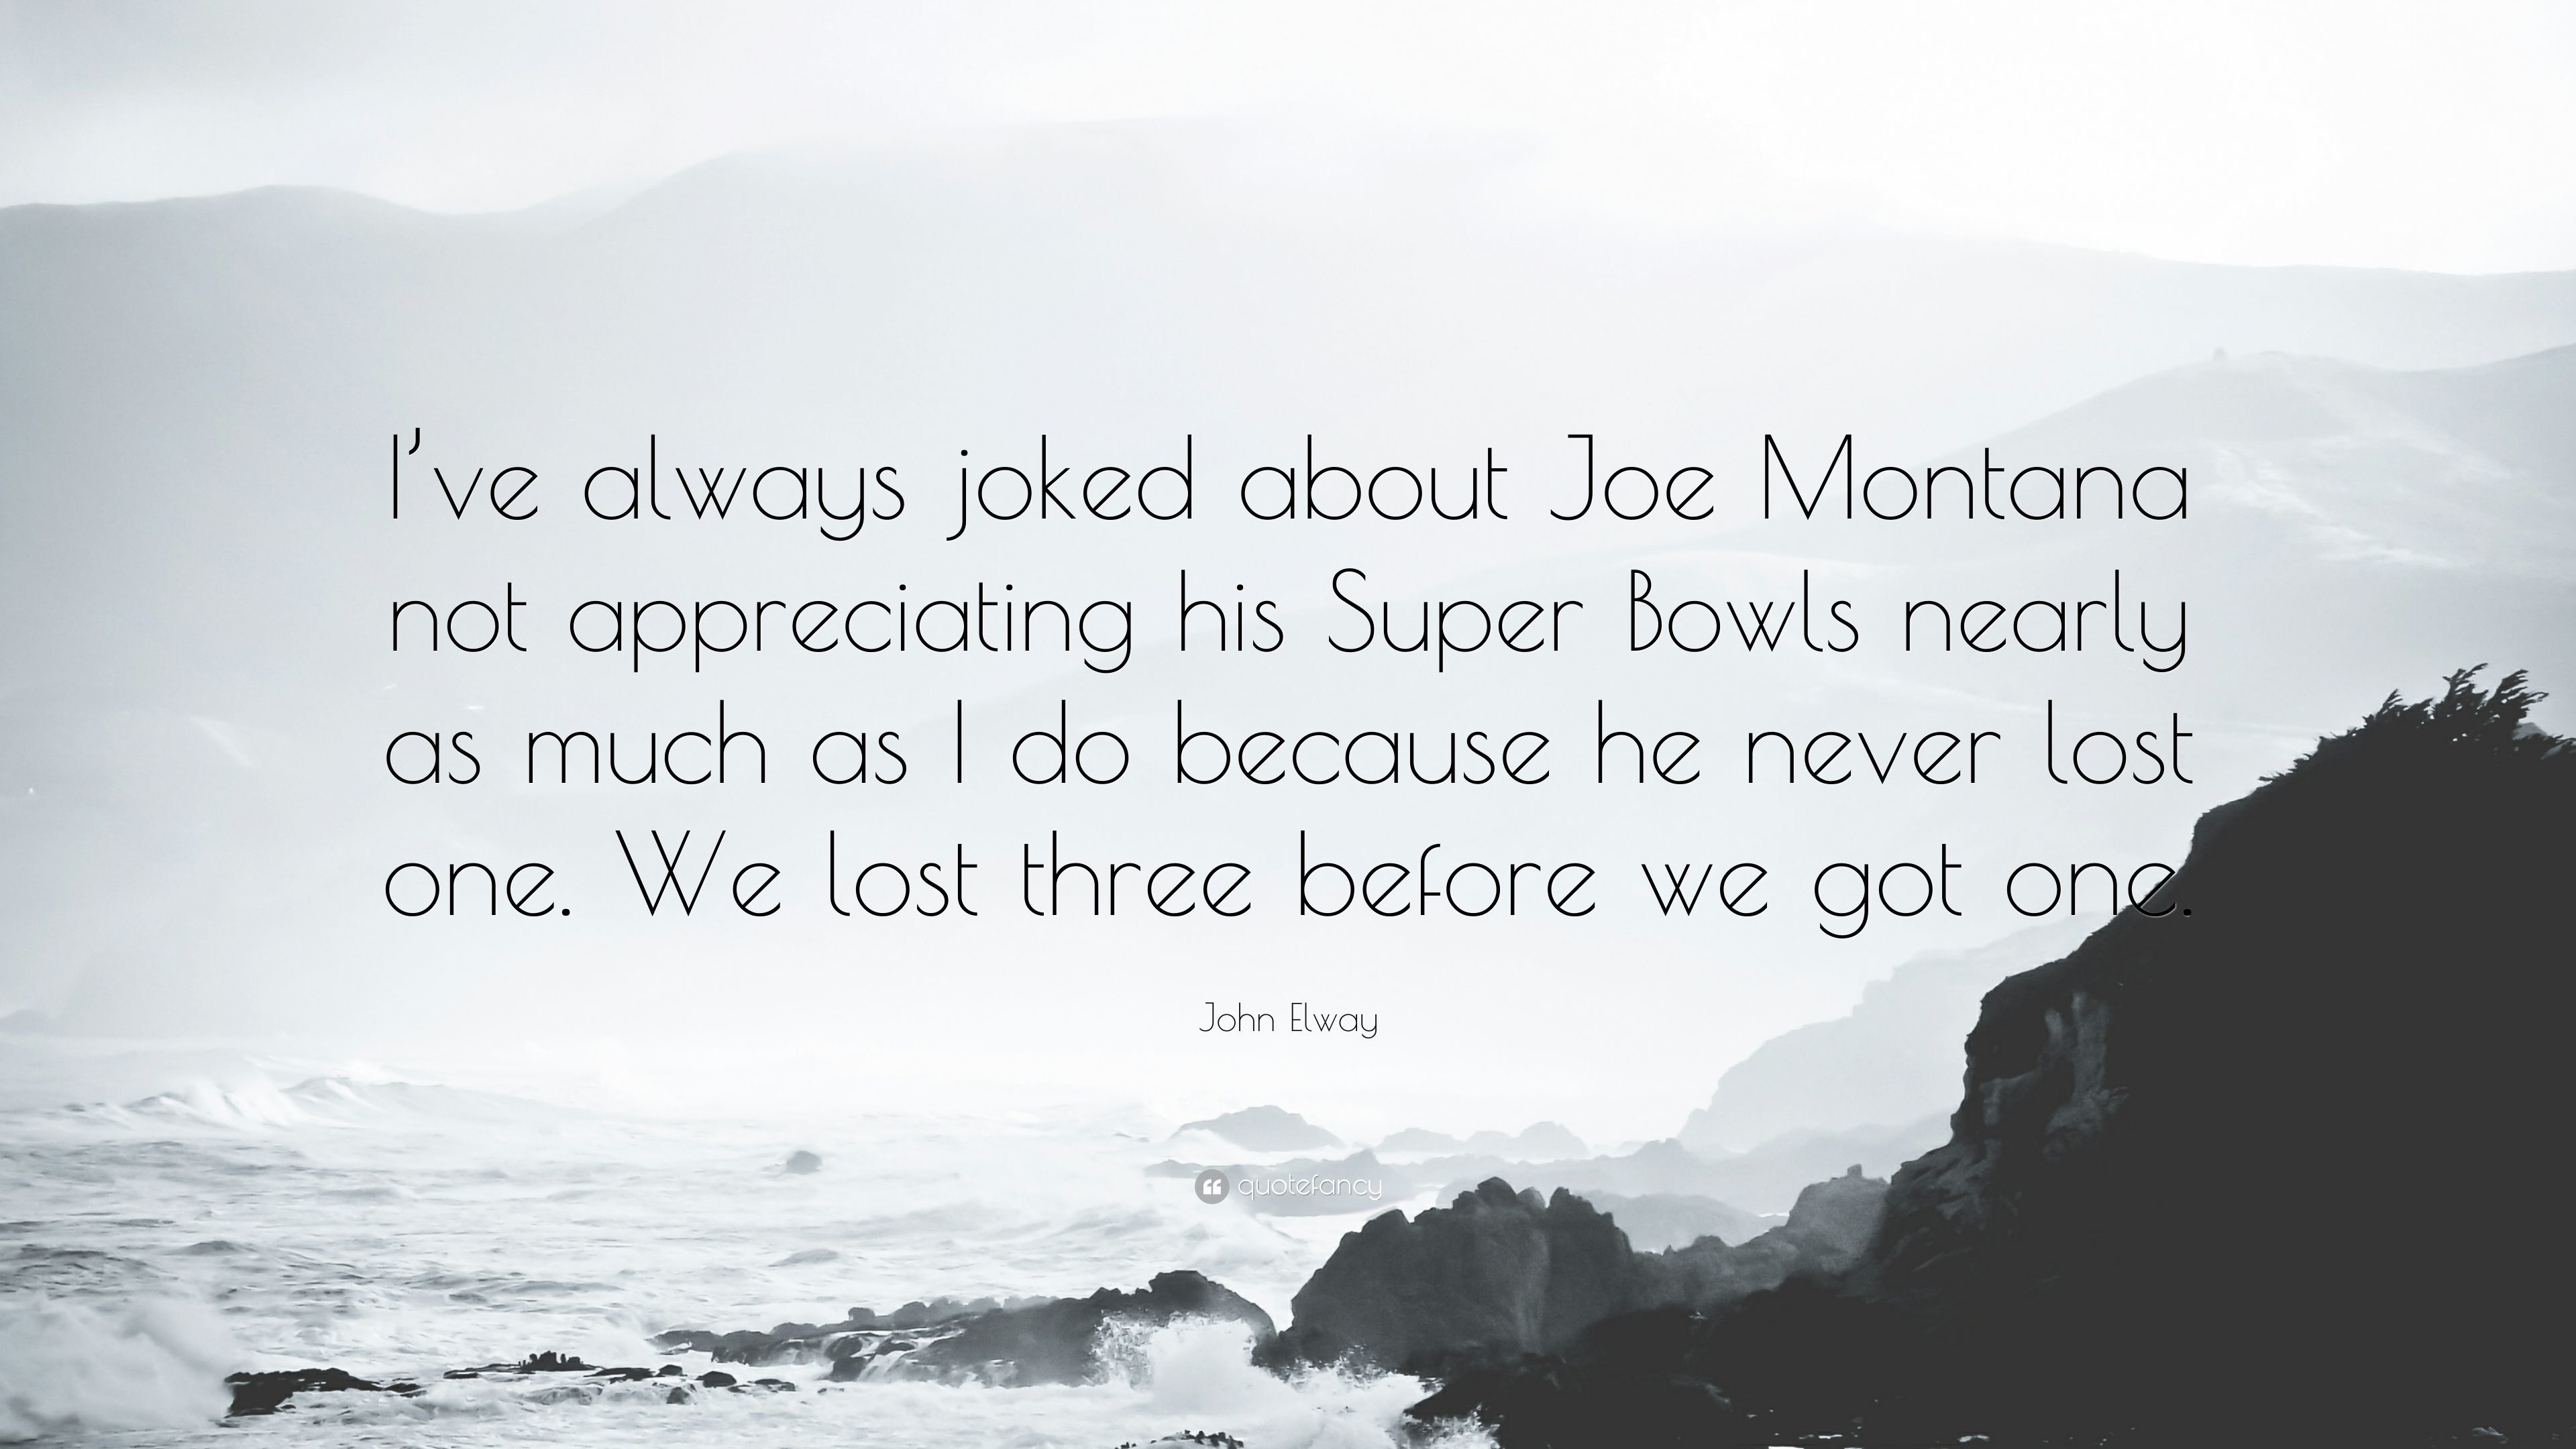 3840x2160 John Elway Quote: “I've always joked about Joe Montana not appreciating his